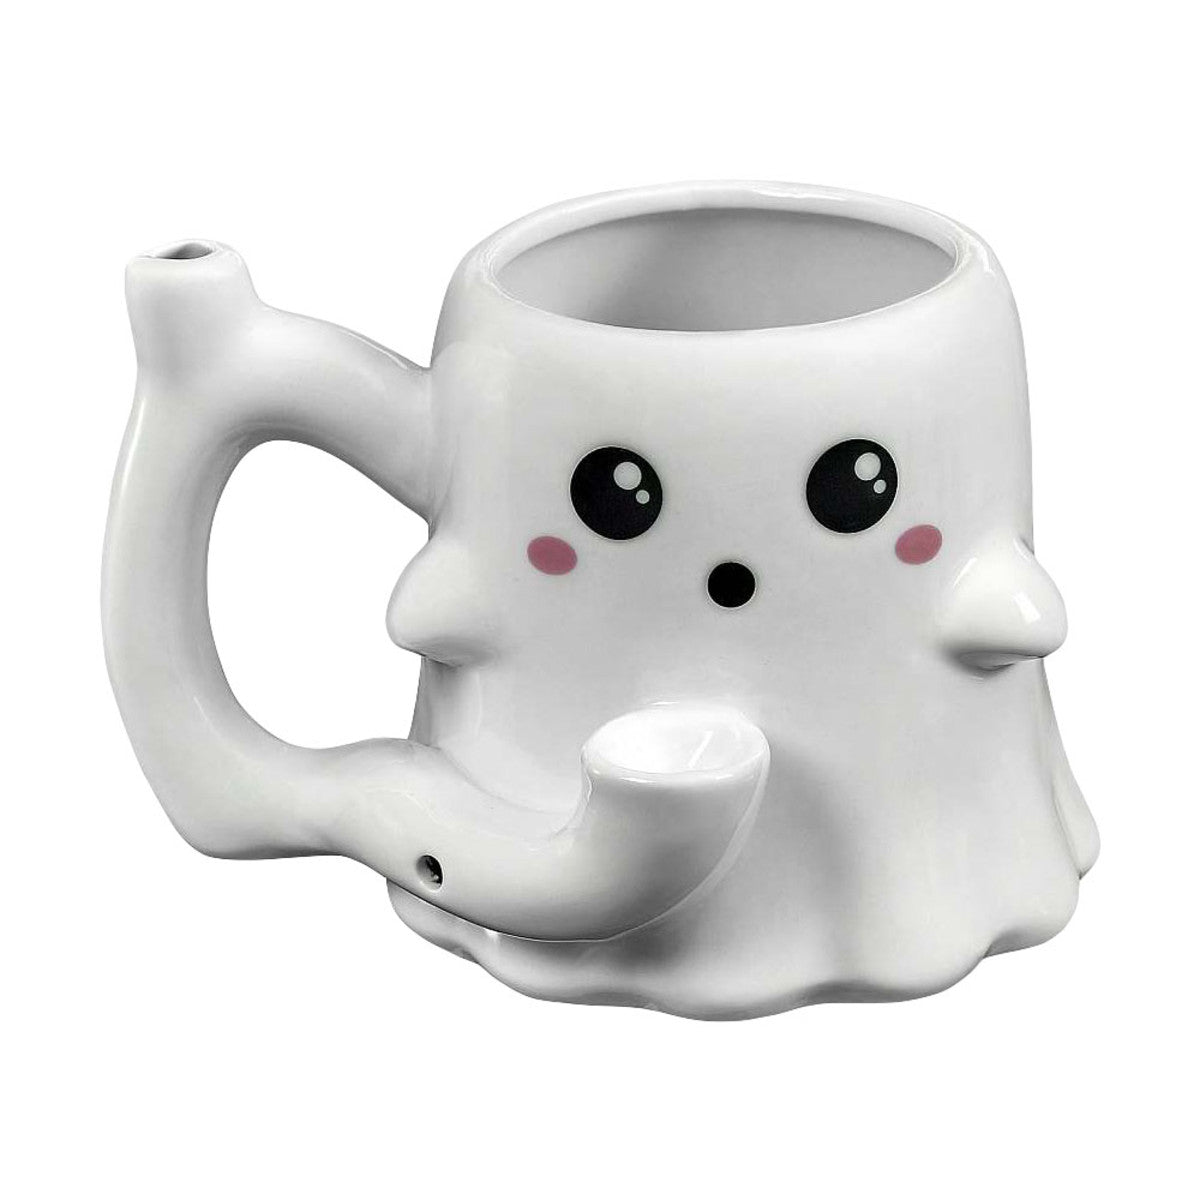 https://hornystoner.com/cdn/shop/products/Roast-Toast-Ghost-Ceramic-Pipe-Mug_A-1.jpg?v=1680554591&width=1200